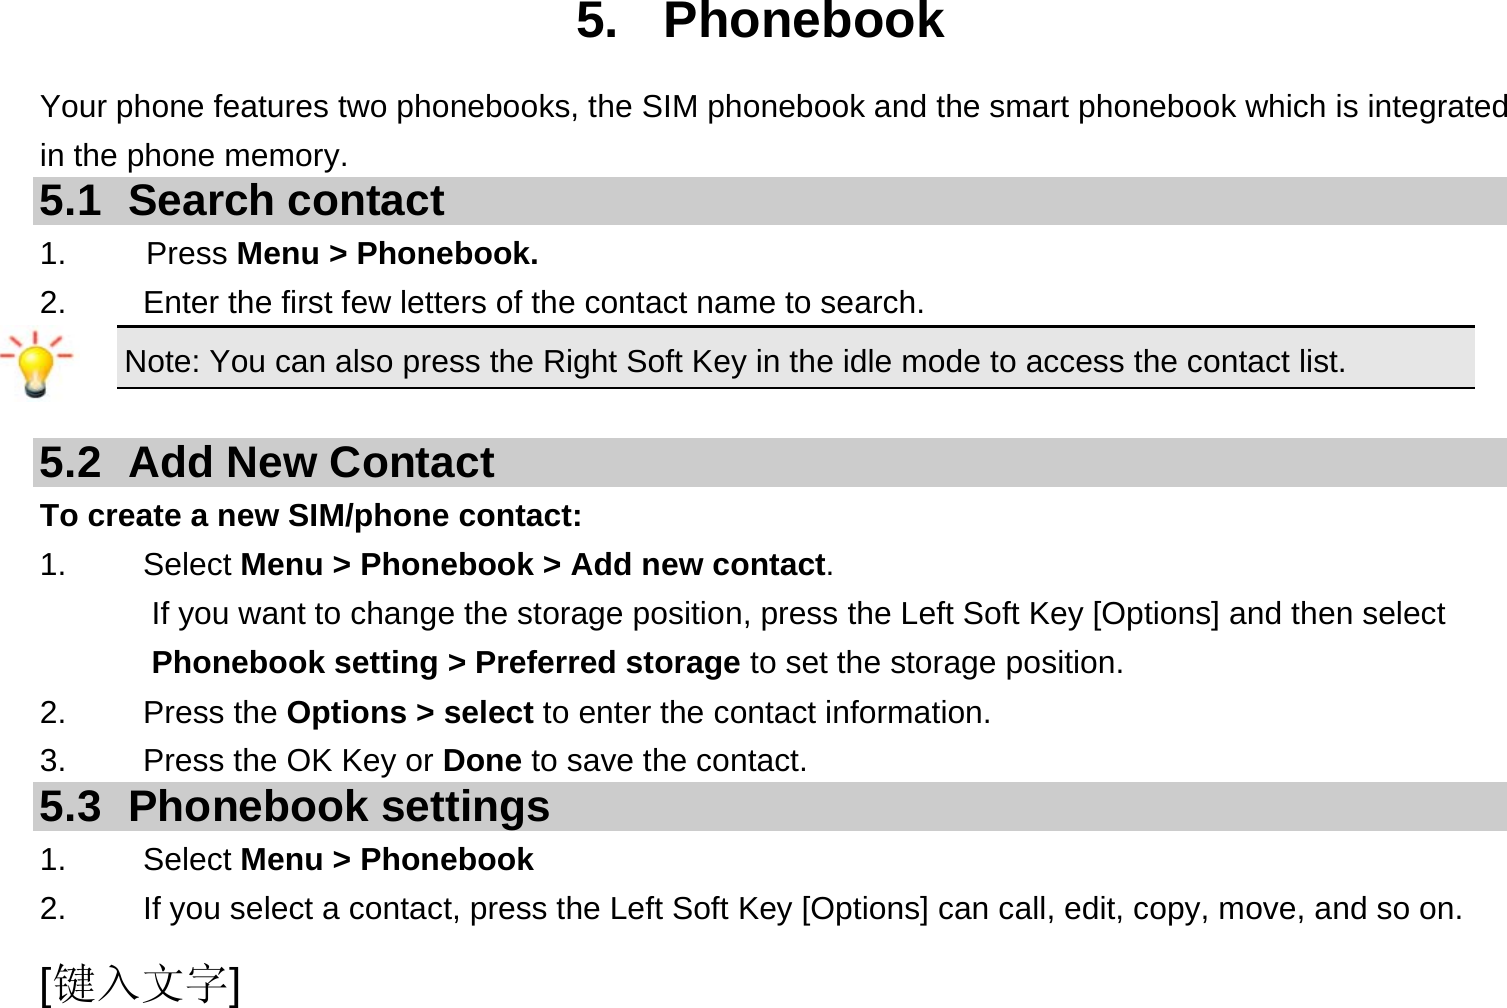  [键入文字] 5. Phonebook Your phone features two phonebooks, the SIM phonebook and the smart phonebook which is integrated in the phone memory. 5.1 Search contact 1.     Press Menu &gt; Phonebook. 2.  Enter the first few letters of the contact name to search. Note: You can also press the Right Soft Key in the idle mode to access the contact list.  5.2  Add New Contact To create a new SIM/phone contact: 1.   Select Menu &gt; Phonebook &gt; Add new contact. If you want to change the storage position, press the Left Soft Key [Options] and then select Phonebook setting &gt; Preferred storage to set the storage position. 2.   Press the Options &gt; select to enter the contact information. 3.    Press the OK Key or Done to save the contact. 5.3 Phonebook settings 1.   Select Menu &gt; Phonebook 2.  If you select a contact, press the Left Soft Key [Options] can call, edit, copy, move, and so on. 